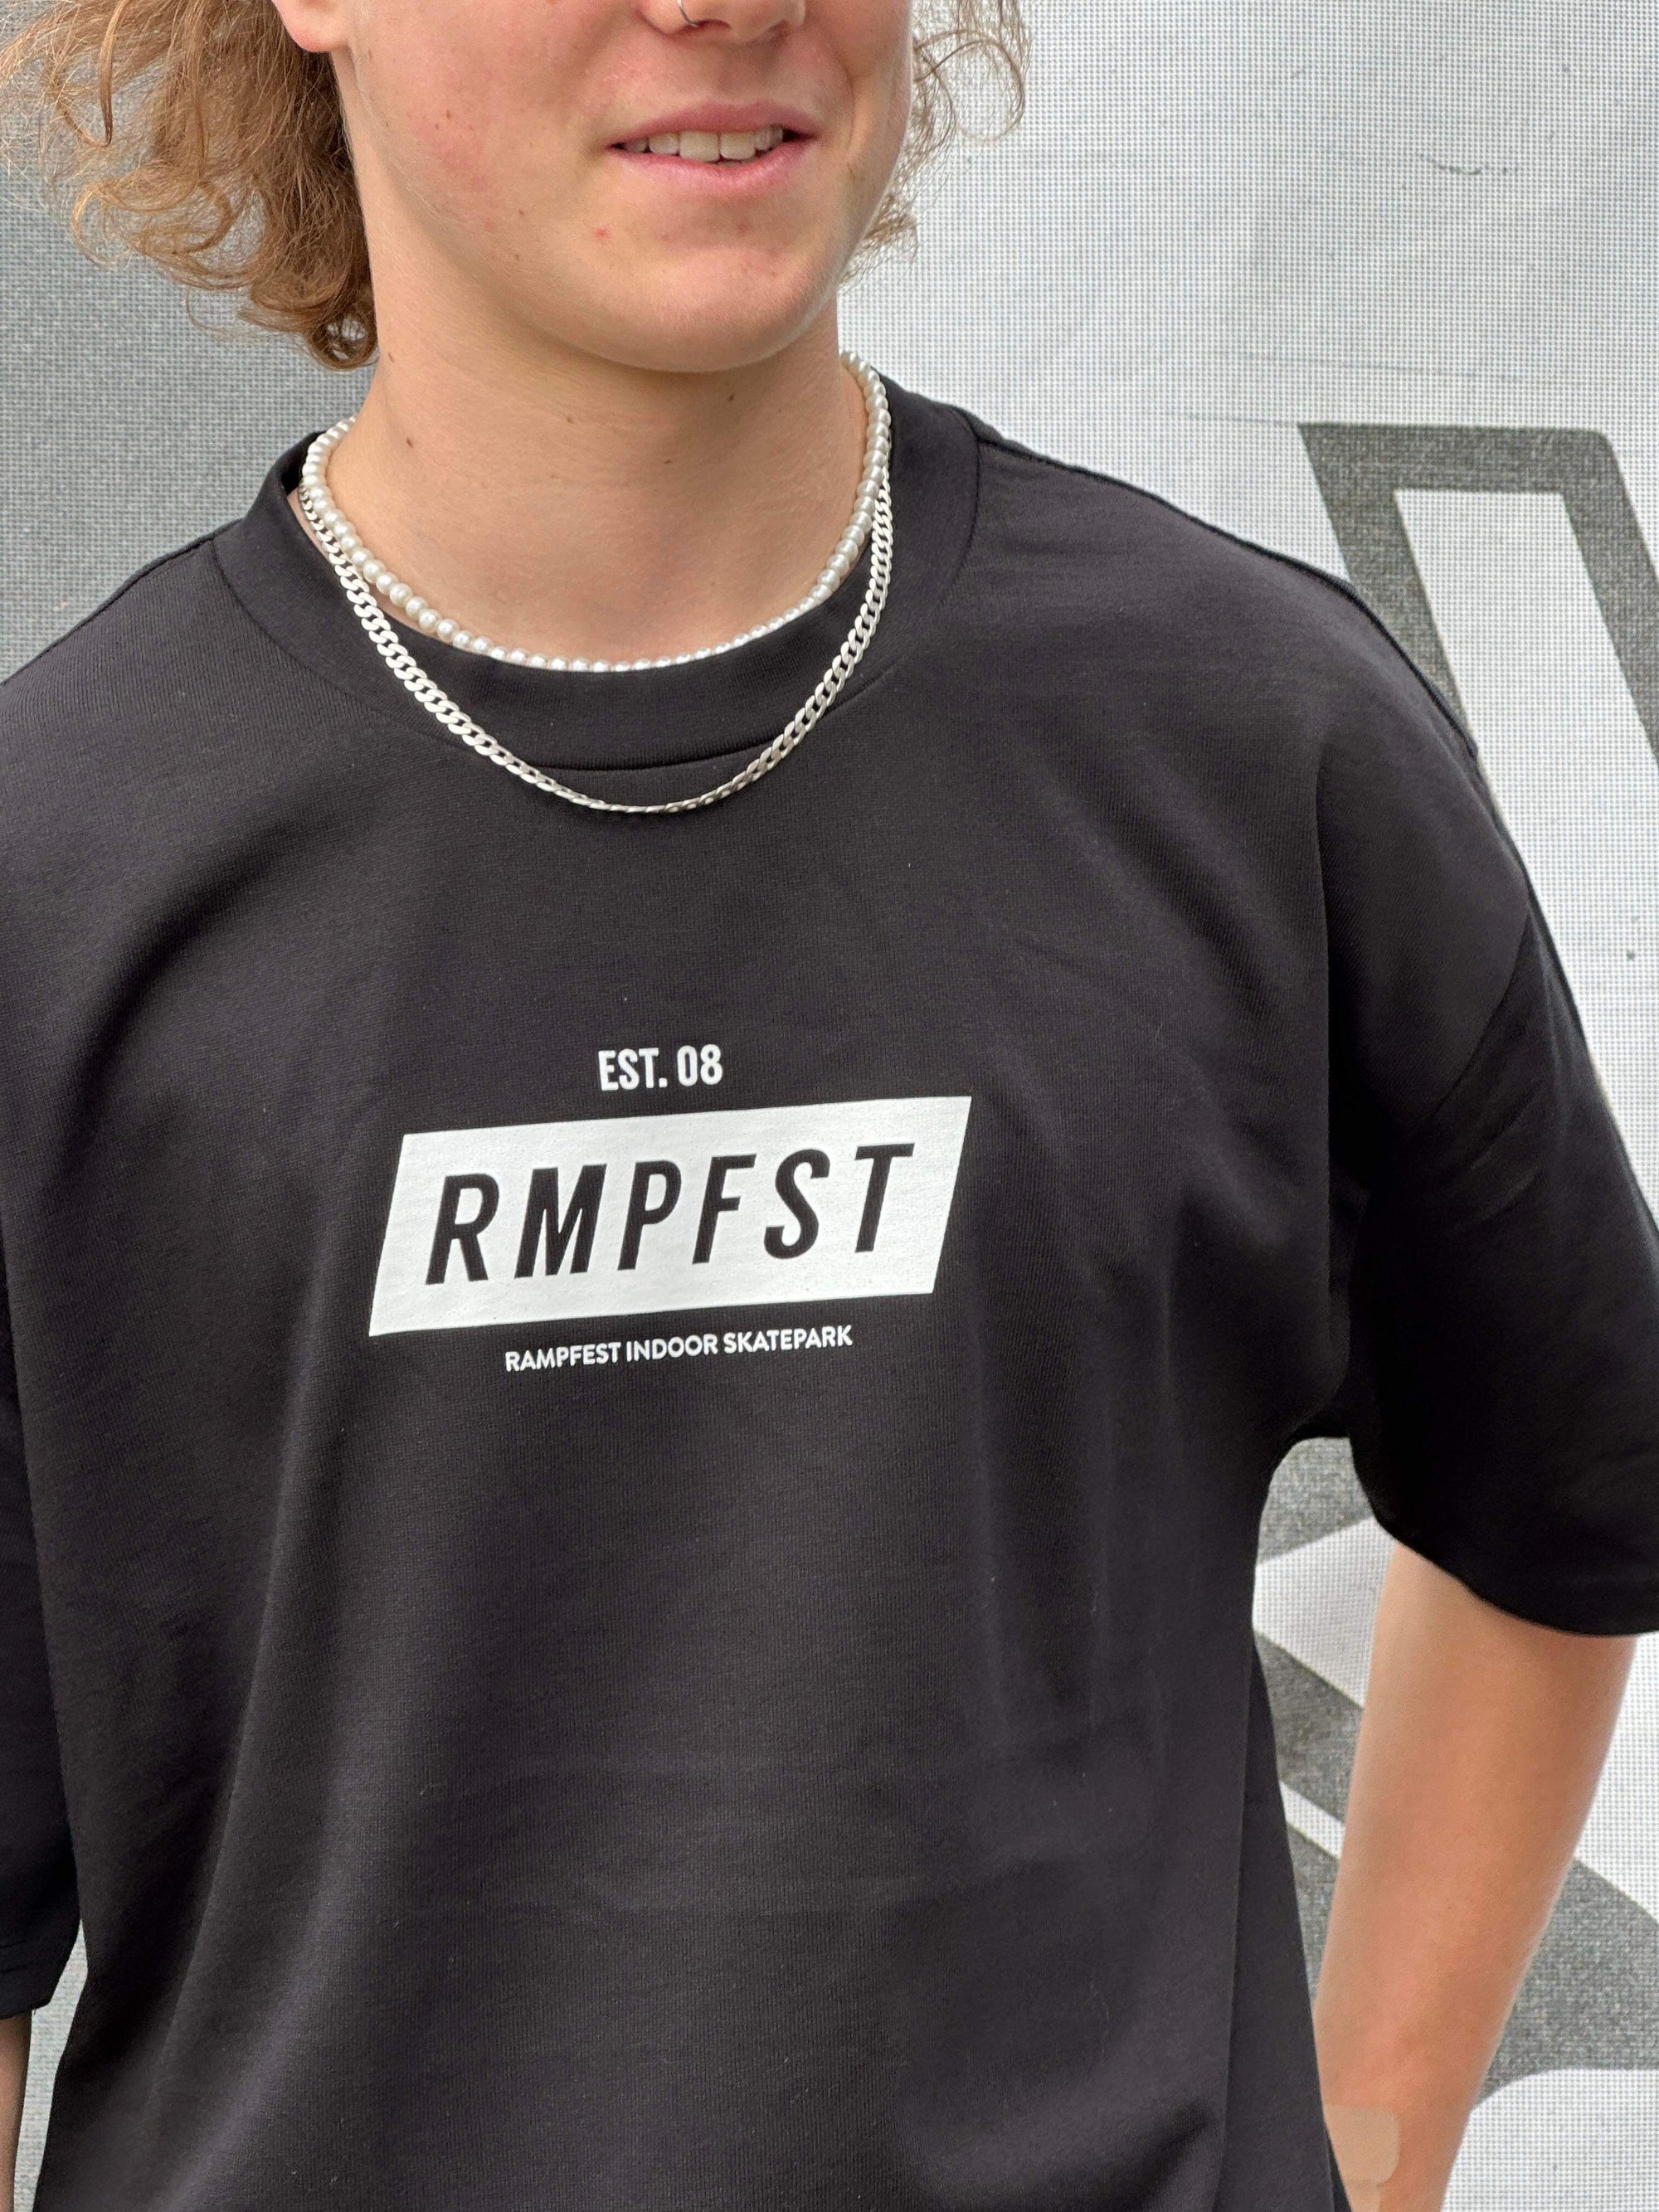 New RampFest Merch